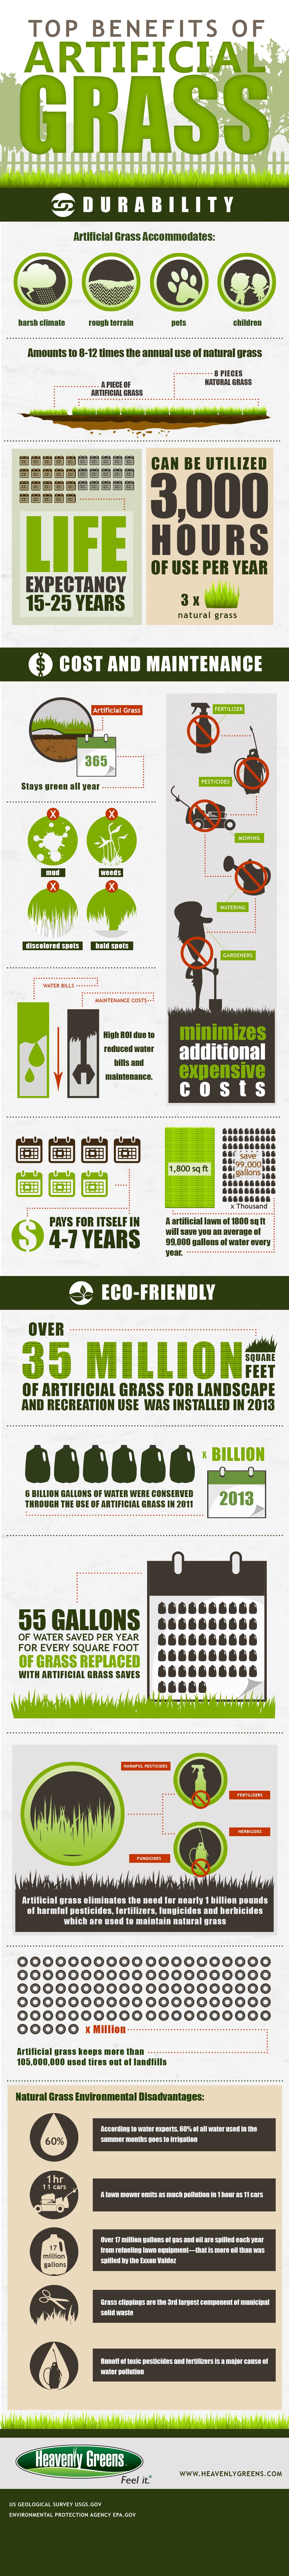 Benefits of Artifical Grass